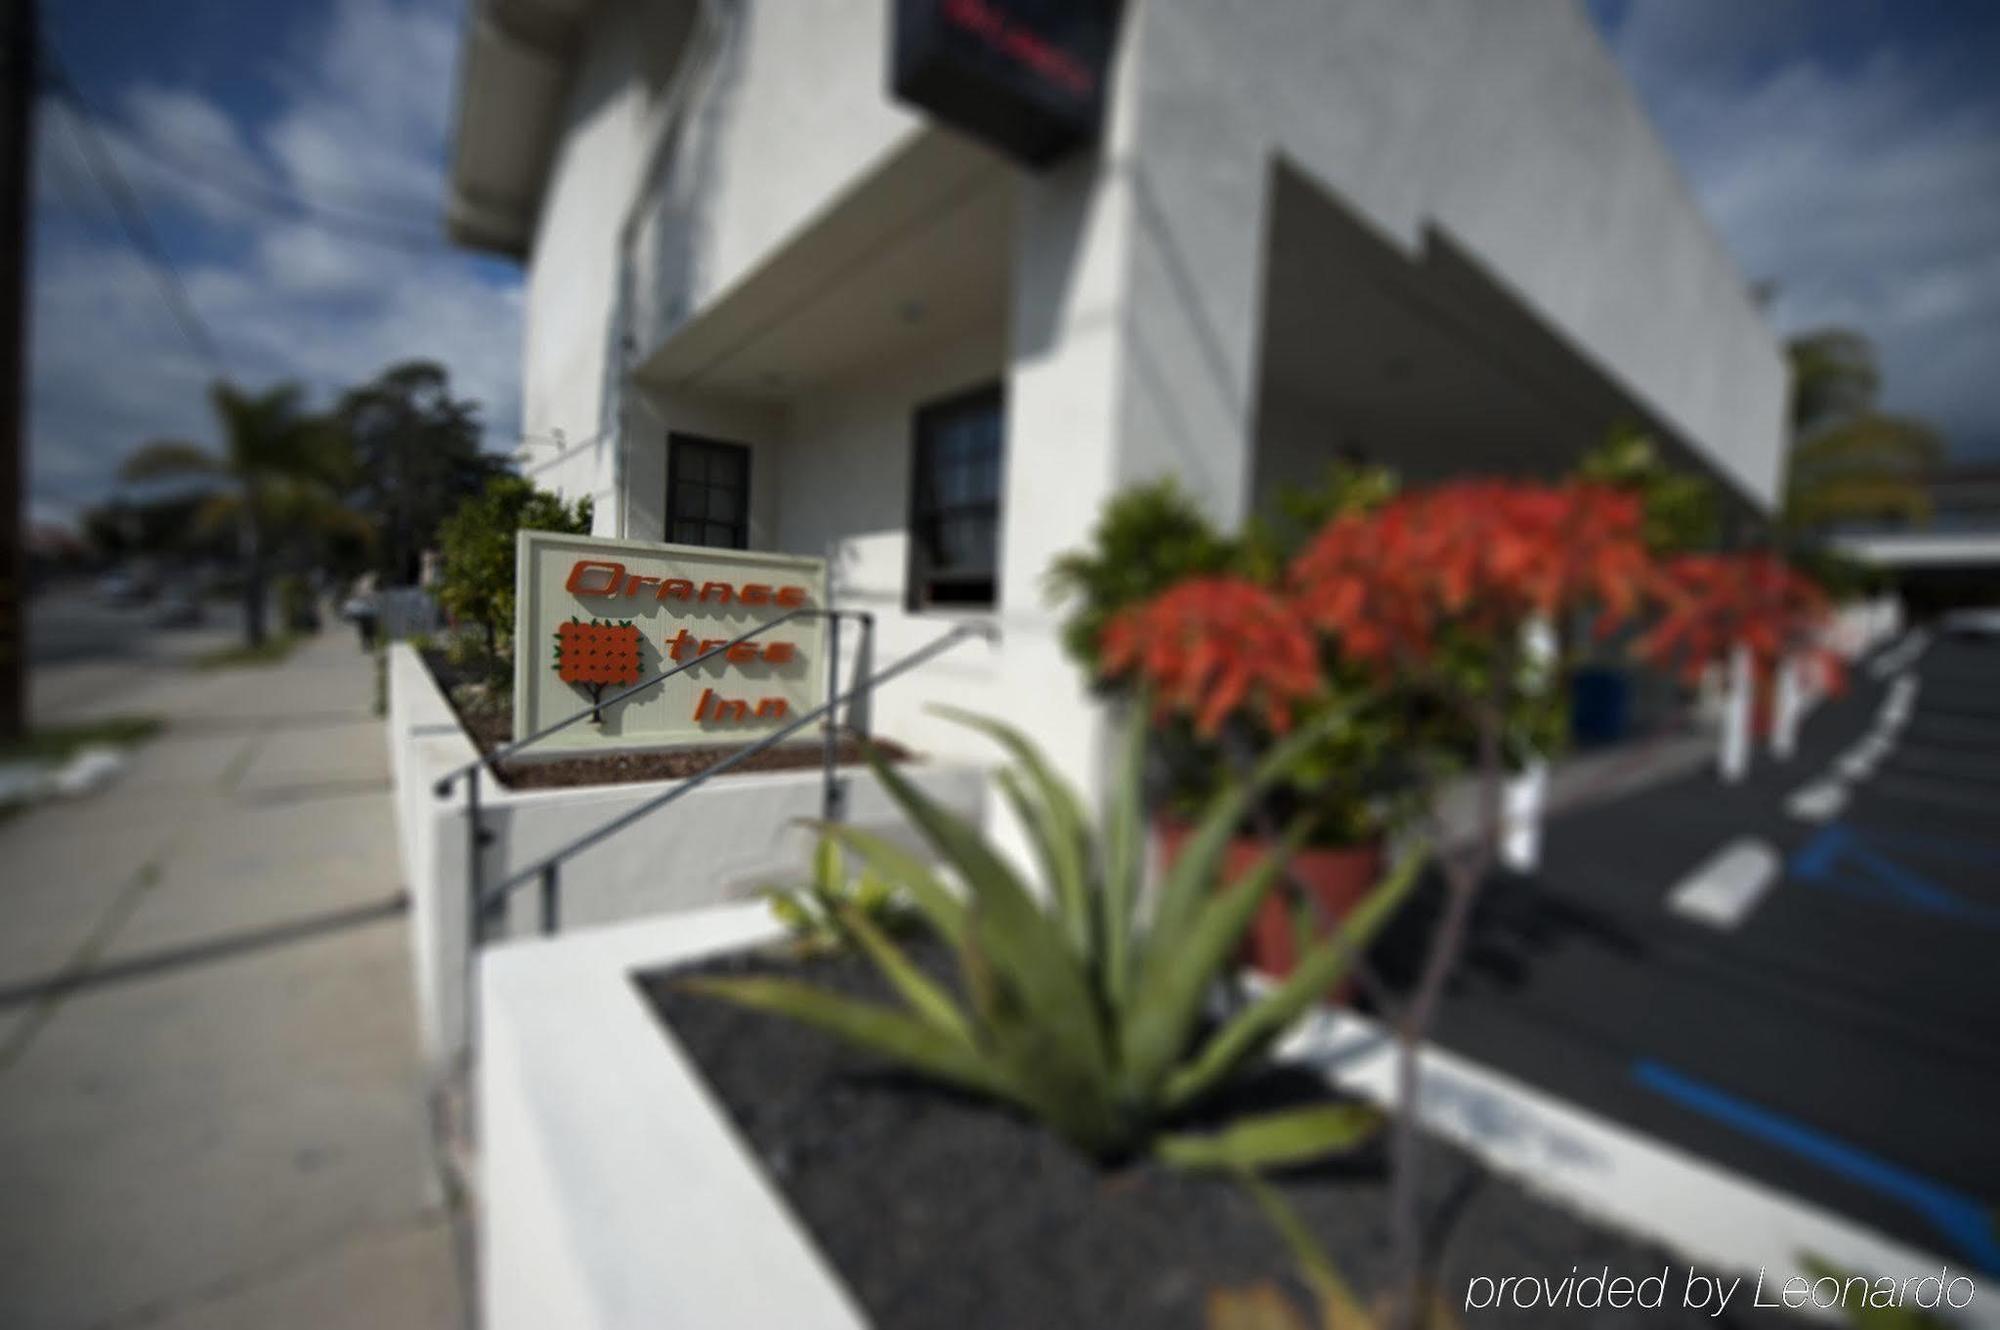 Orange Tree Inn Santa Barbara Esterno foto